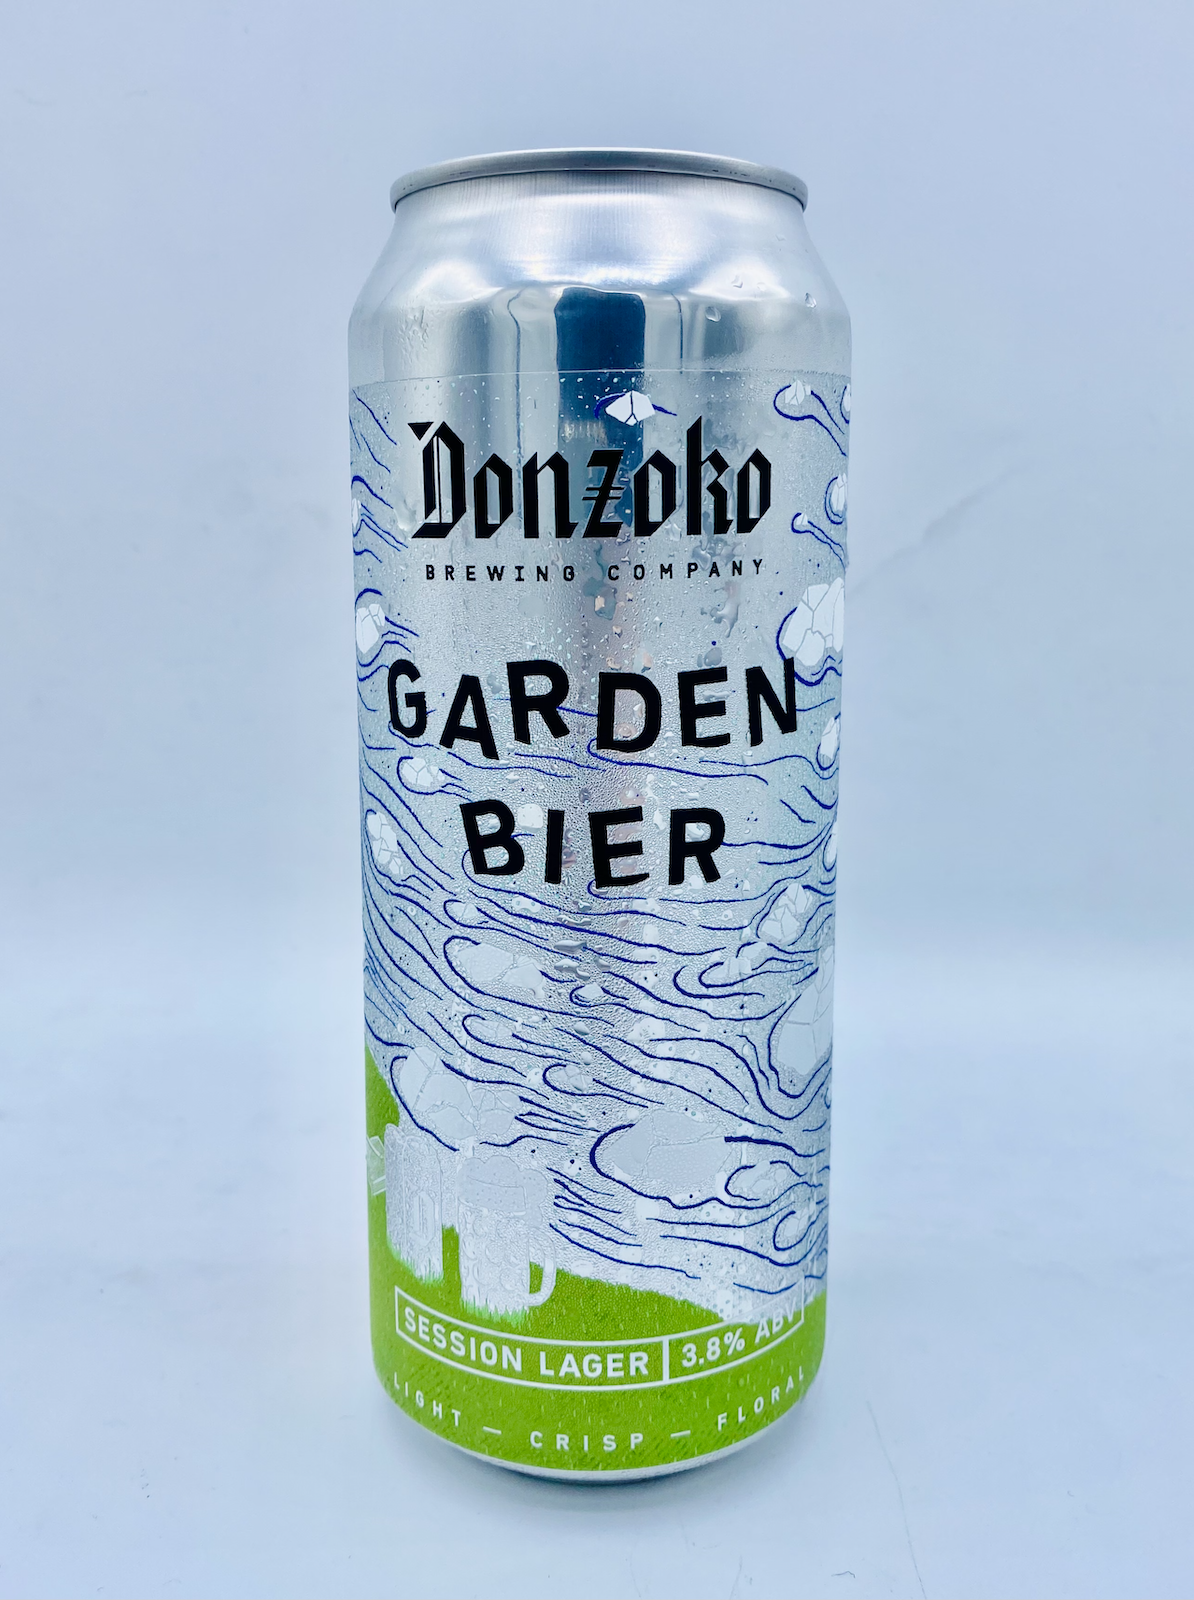 Donzoko - Garden Bier 3.8%